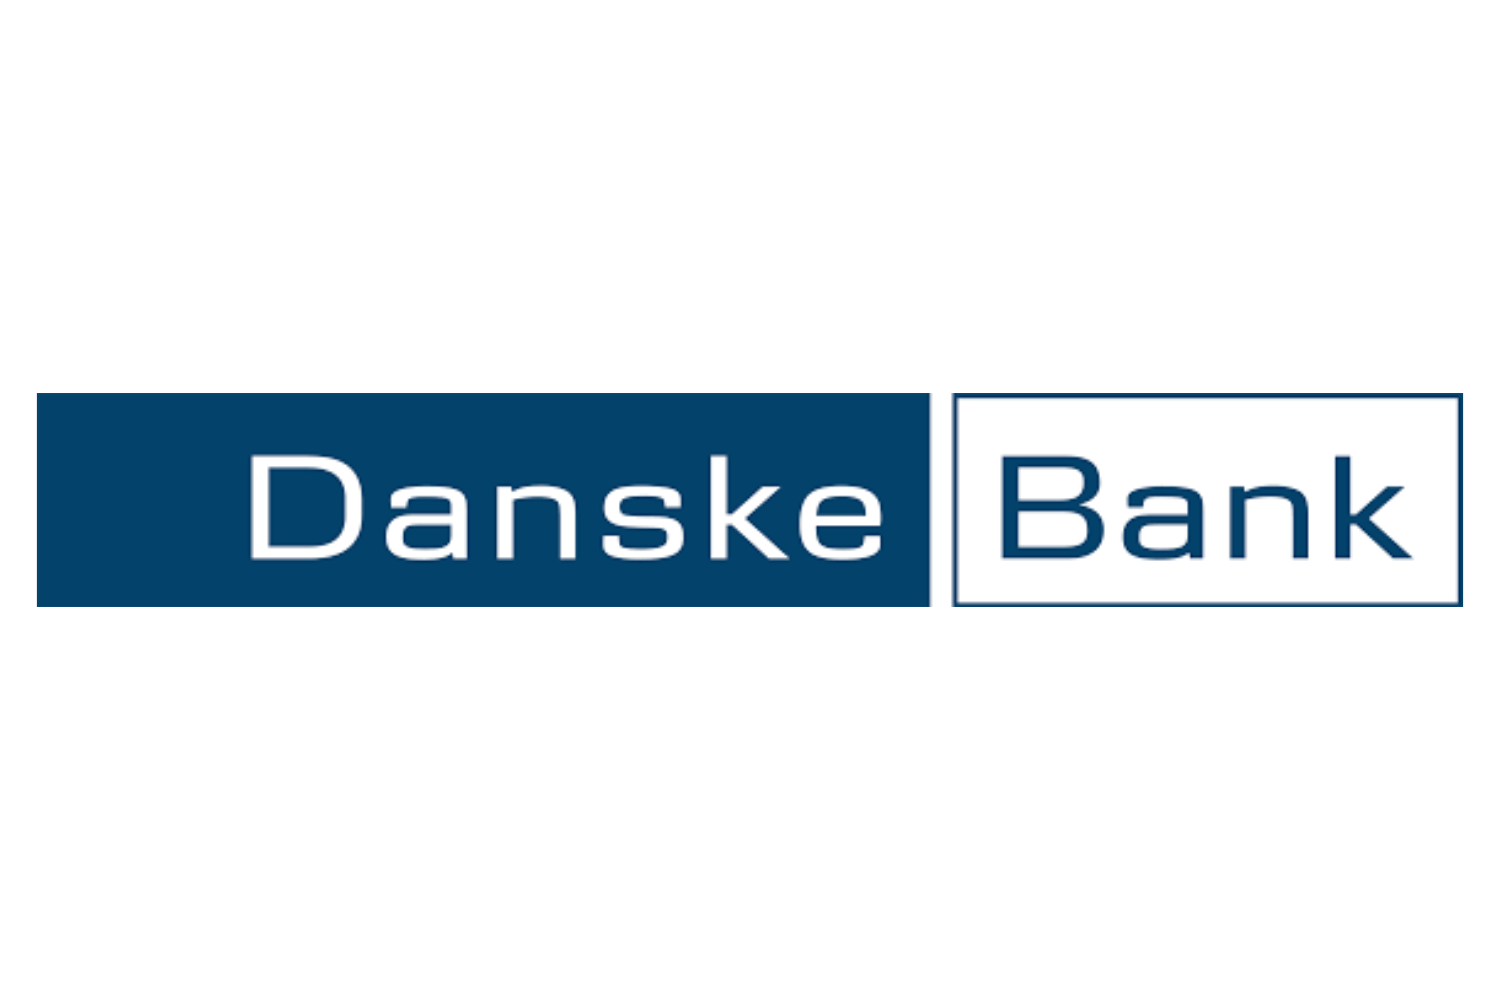 danske bank mafija tamsoje klientai